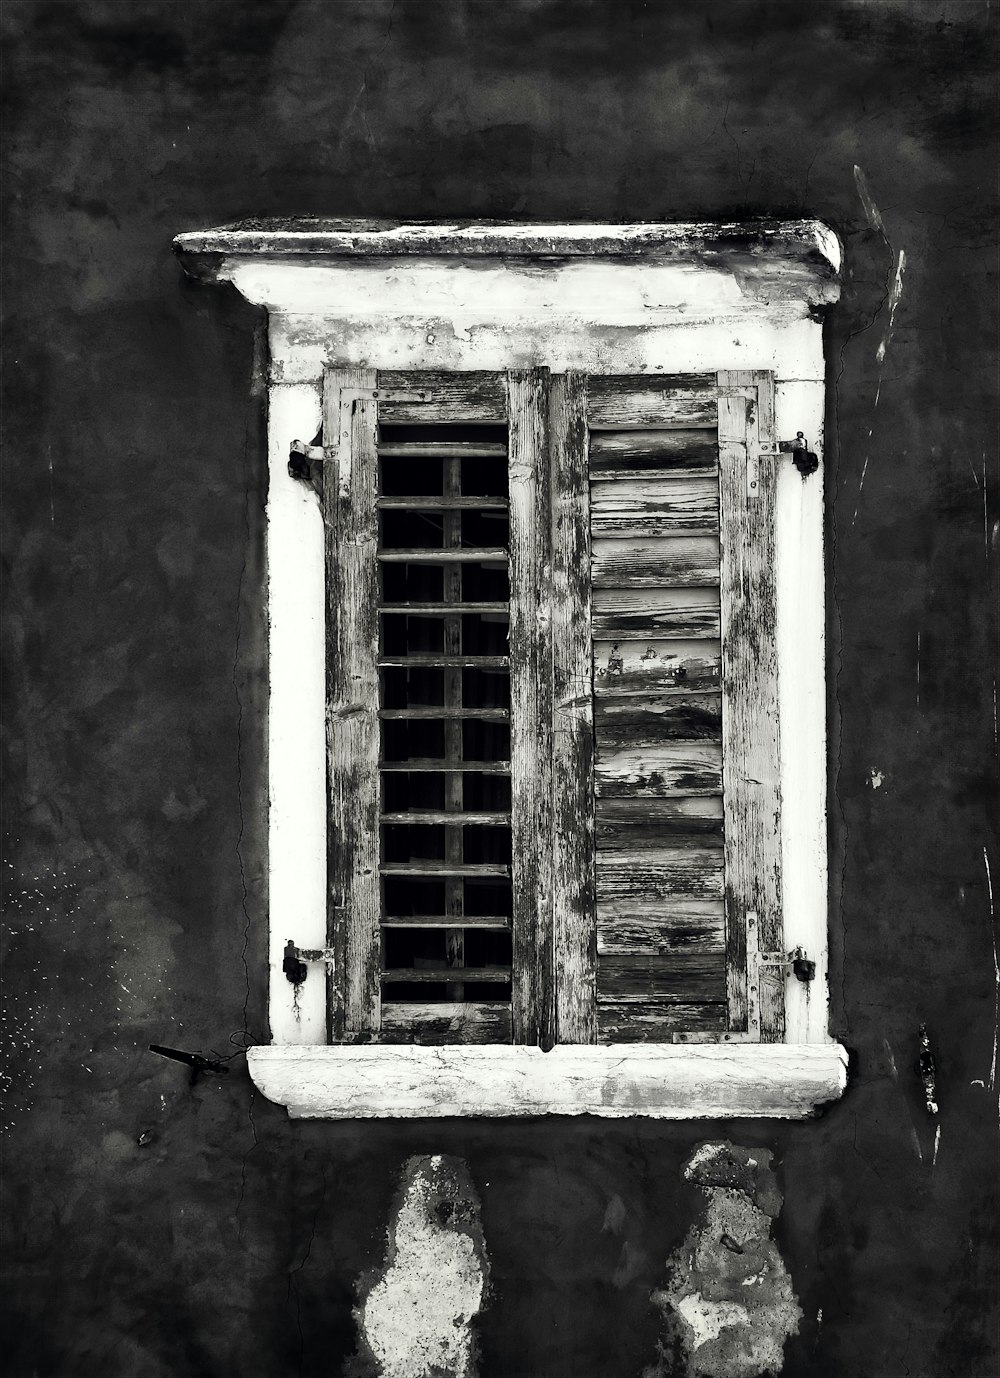 grayscale photography of opened window